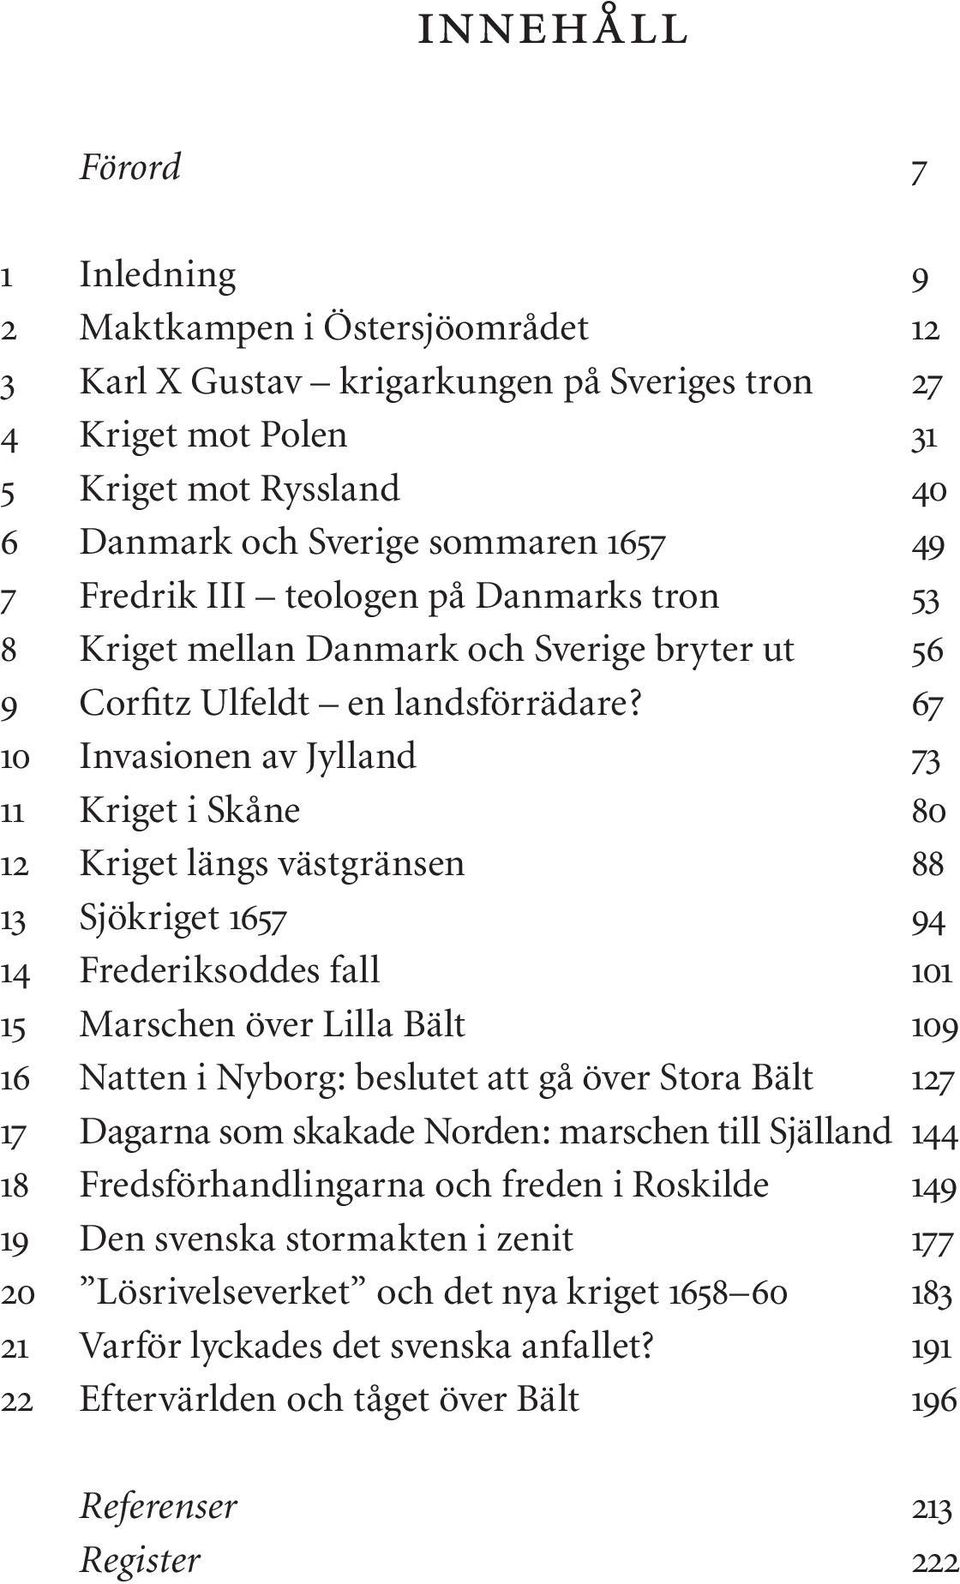 Lars Ericson Wolke tåget över bält. historiska media - PDF Gratis ...